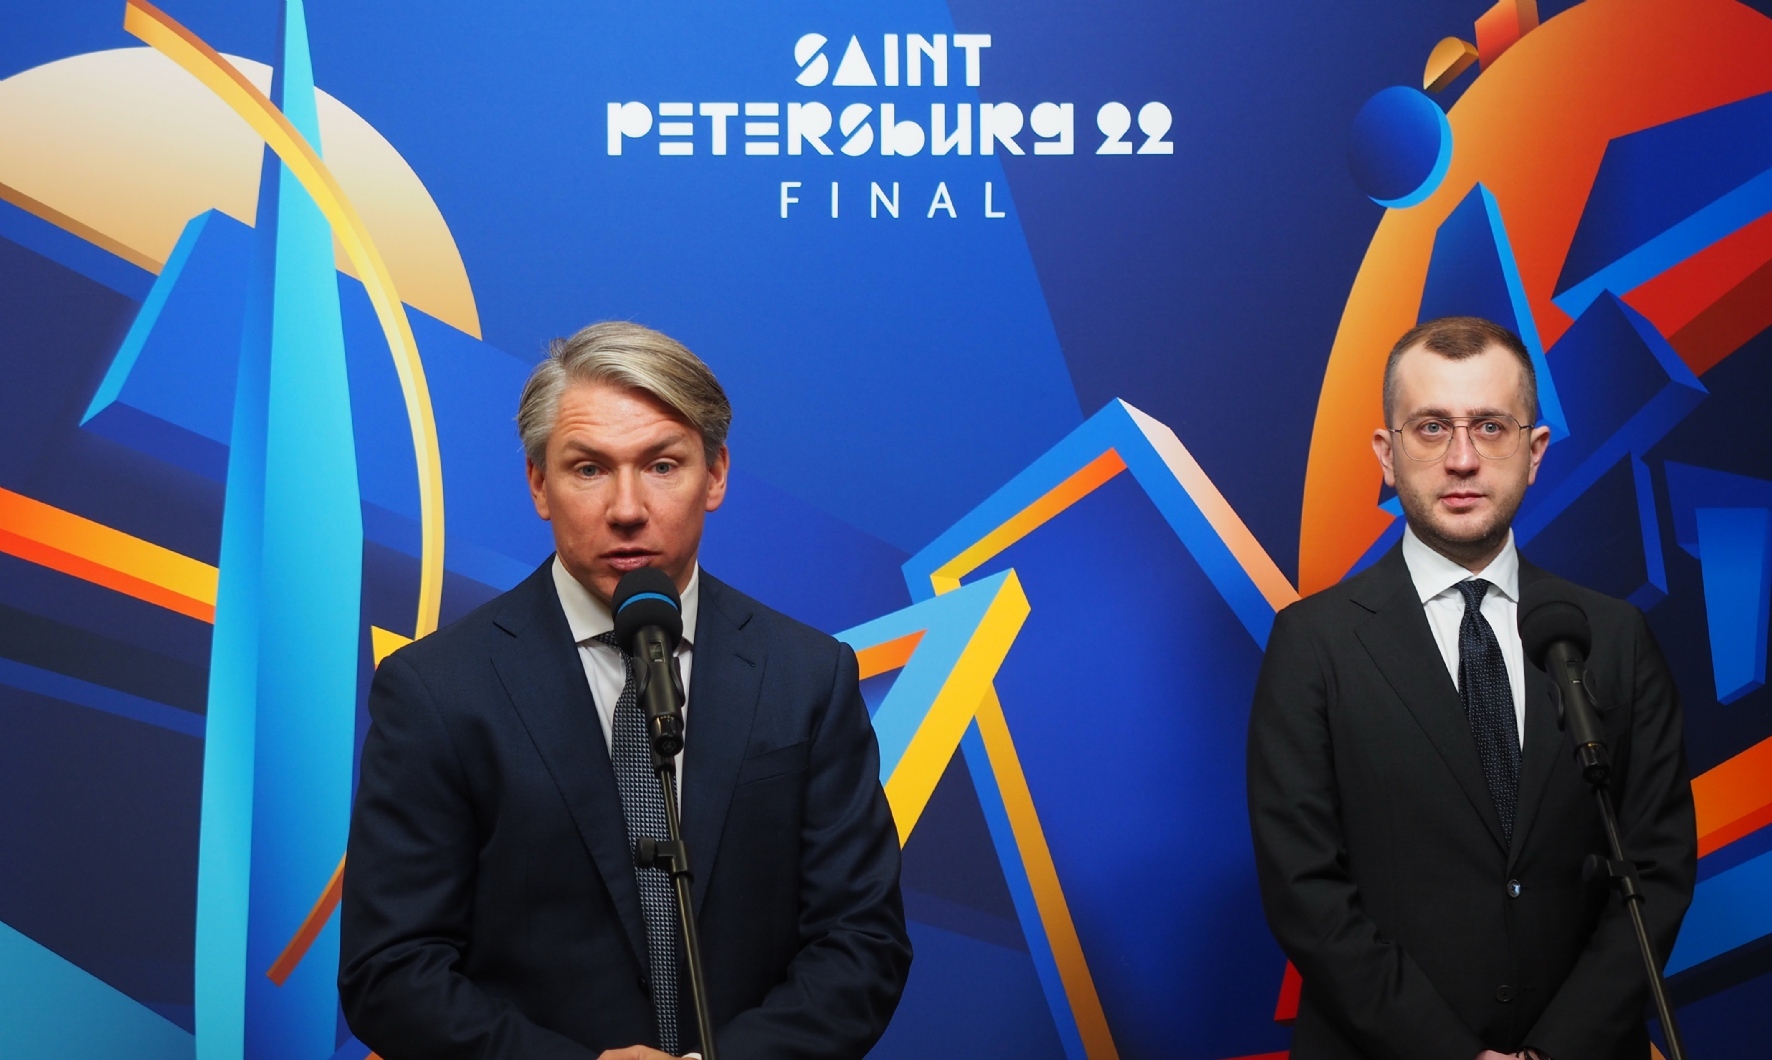 Руководитель организационного комитета финала Лиги чемпионов в Санкт-Петербурге Алексей Сорокин и вице-губернатор Санкт-Петербурга Борис Пиотровский